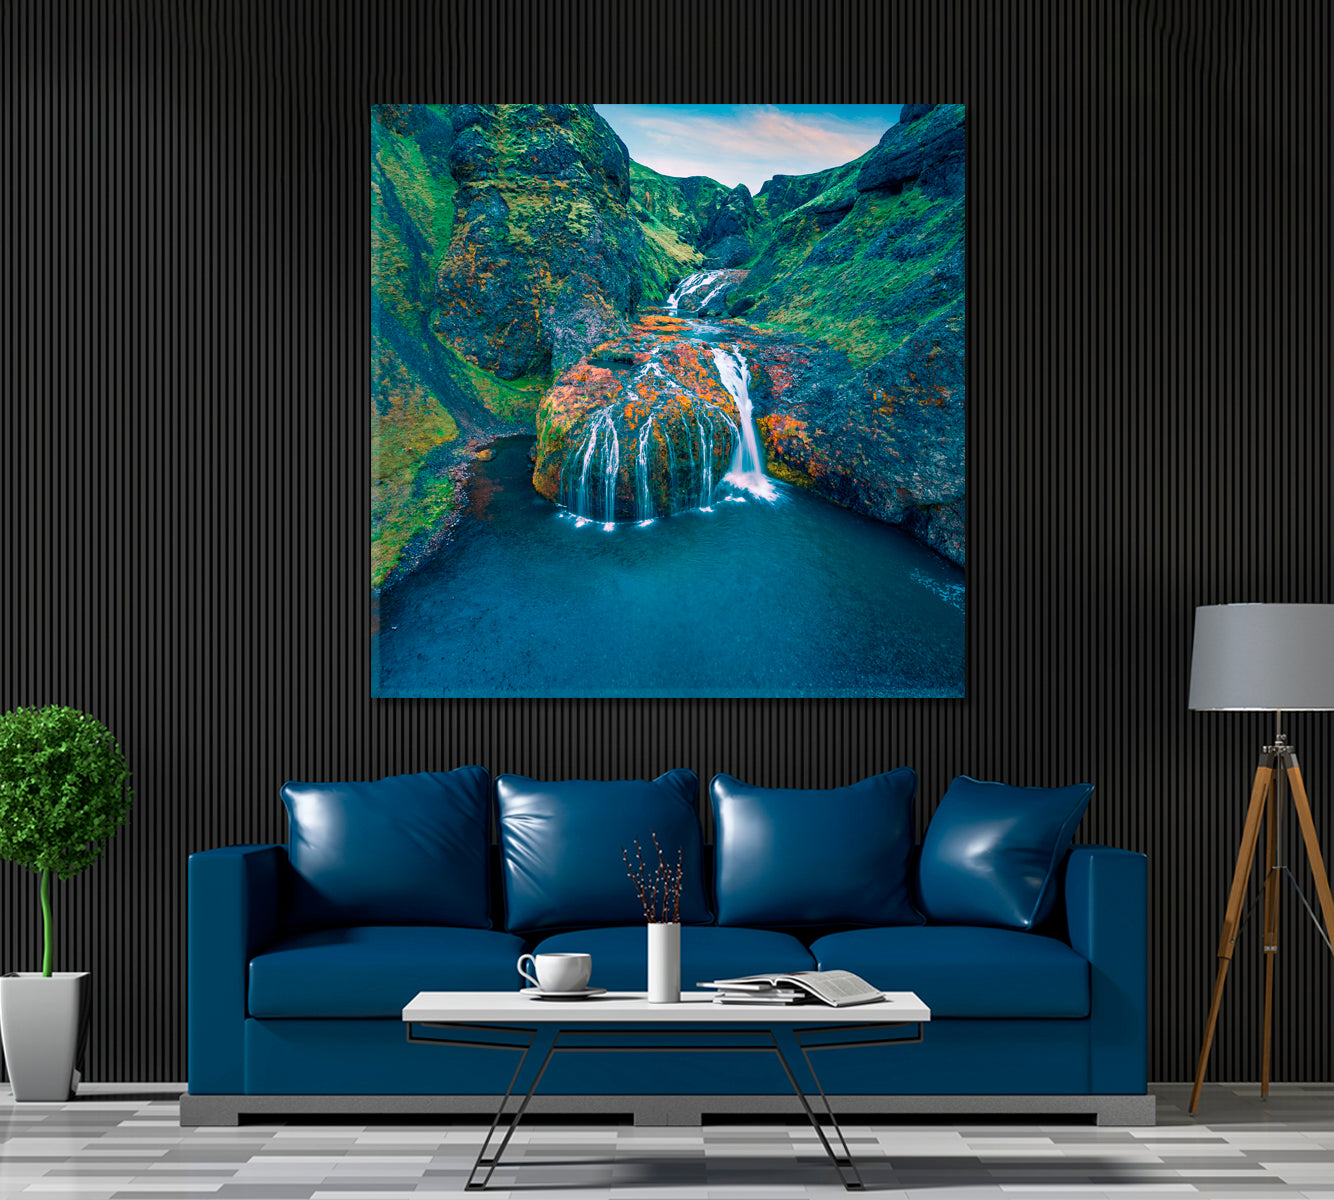 Stjornarfoss Waterfall, Iceland Landscape Canvas Print ArtLexy   